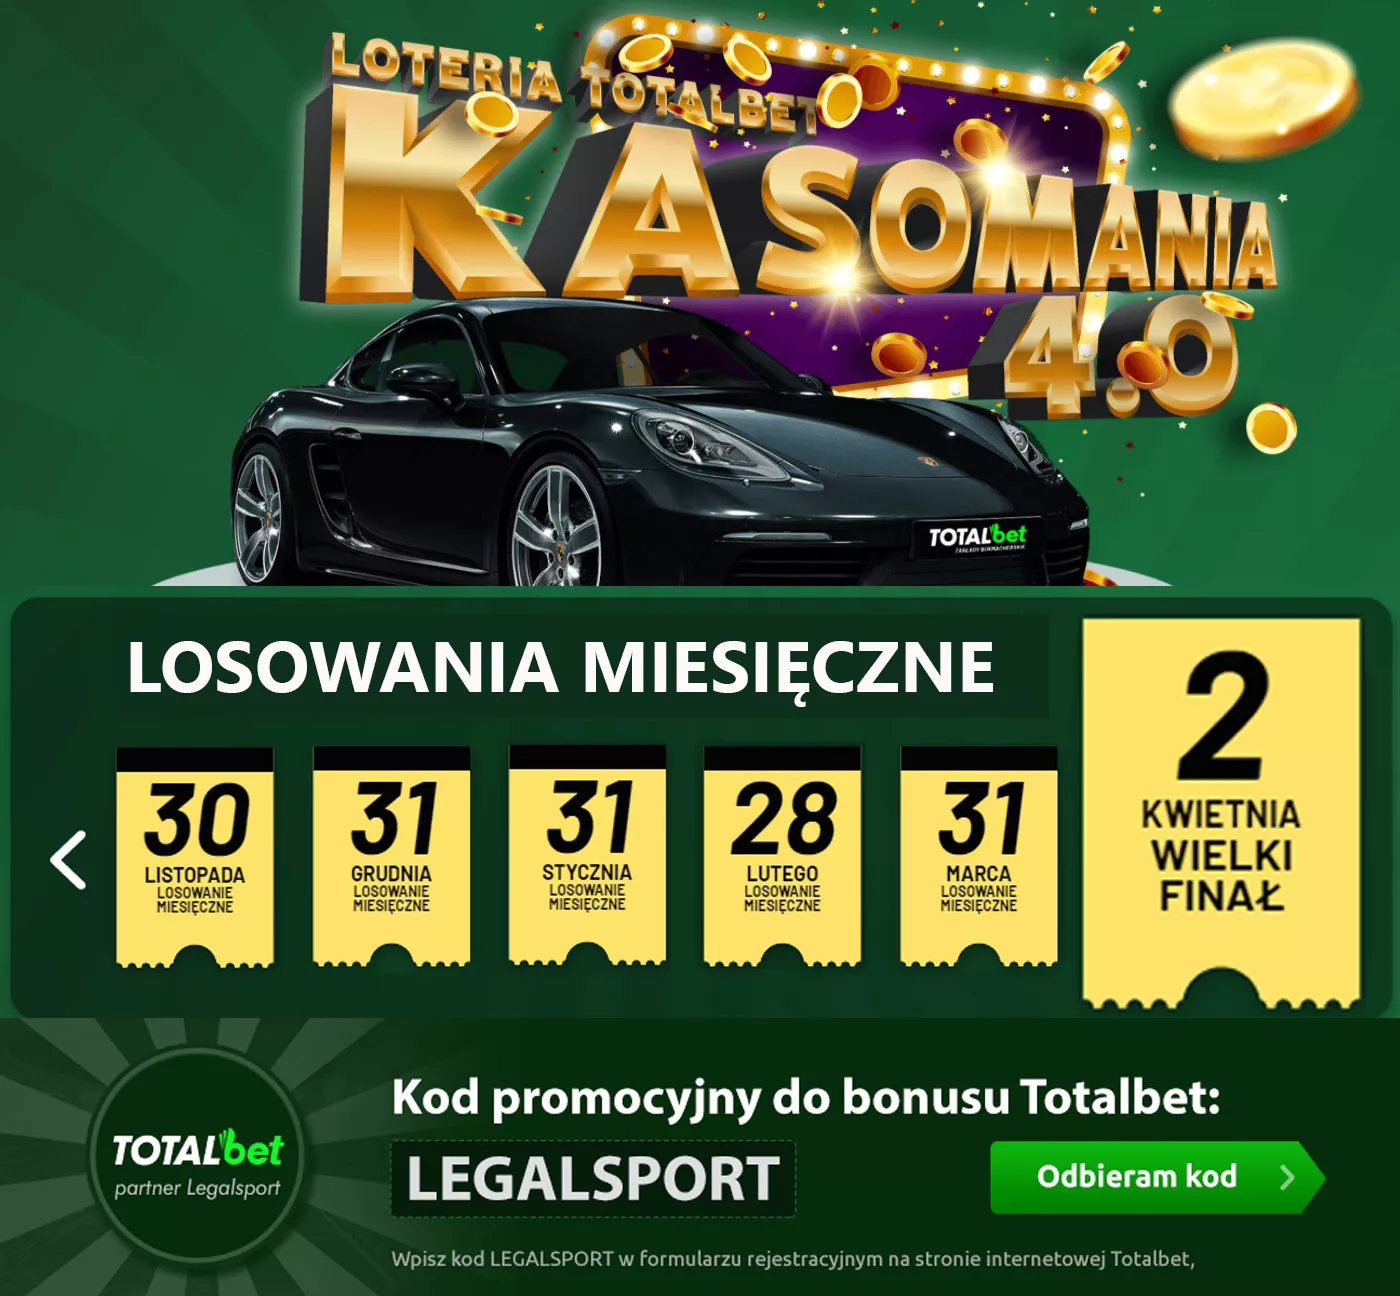 Nagrody w Kasomanii za 0,7 mln zł + freebety